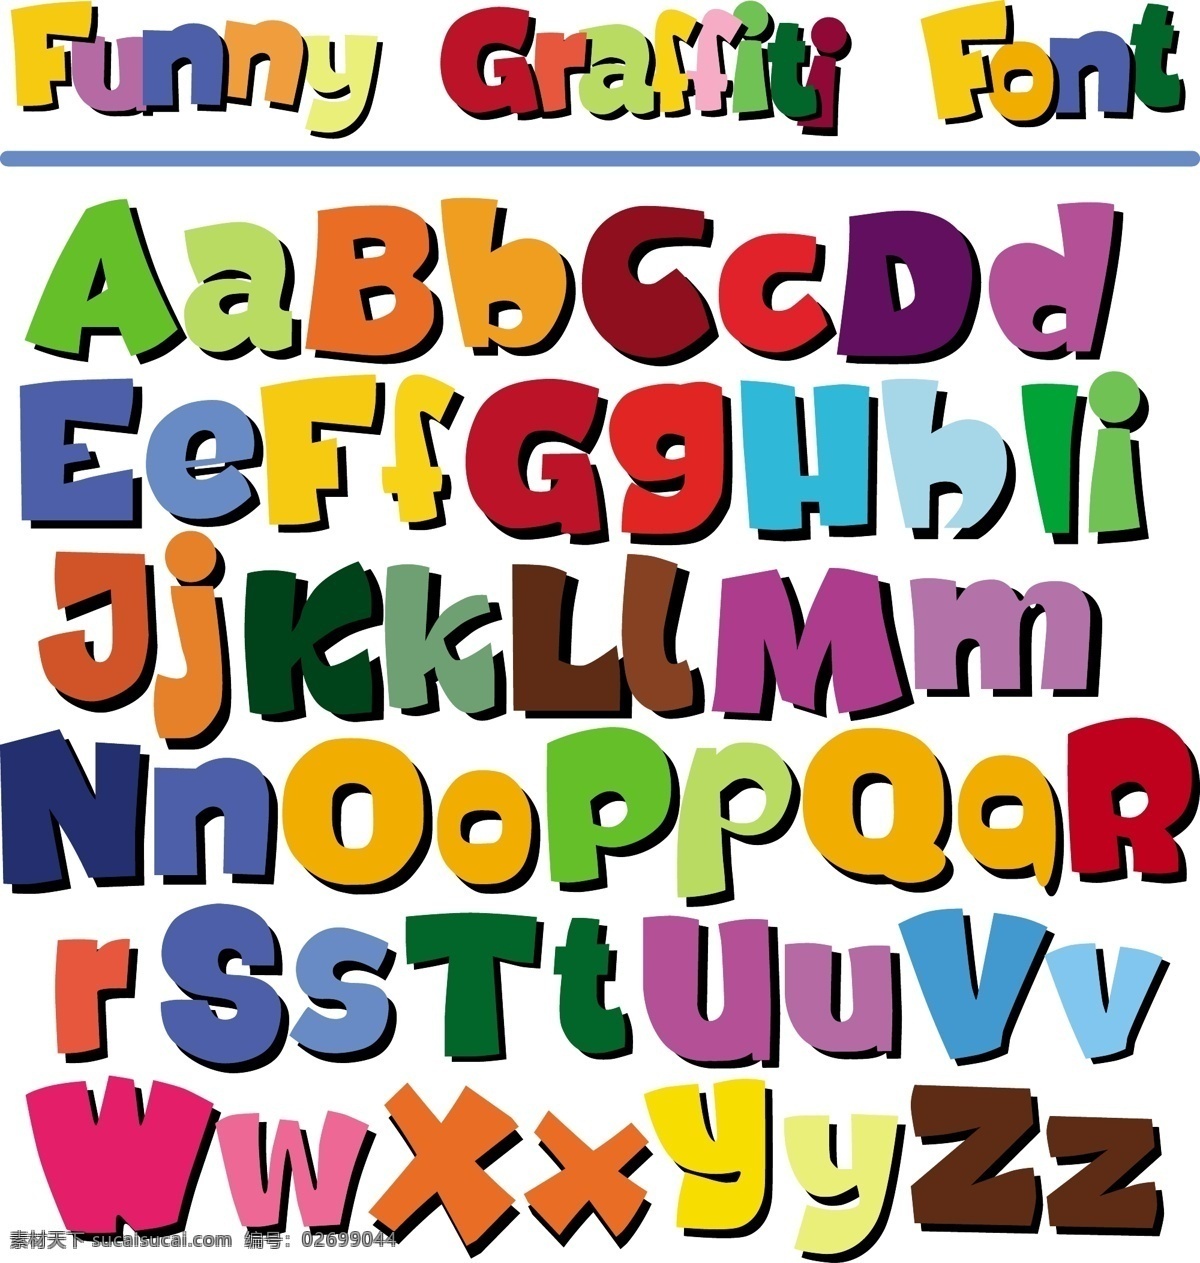 儿童 符号 矢量 花纹 可爱 可爱字母 拼音 数字 字母 模板下载 儿童字母 英文字母 英文字体 幼儿 字母主题 矢量图 艺术字